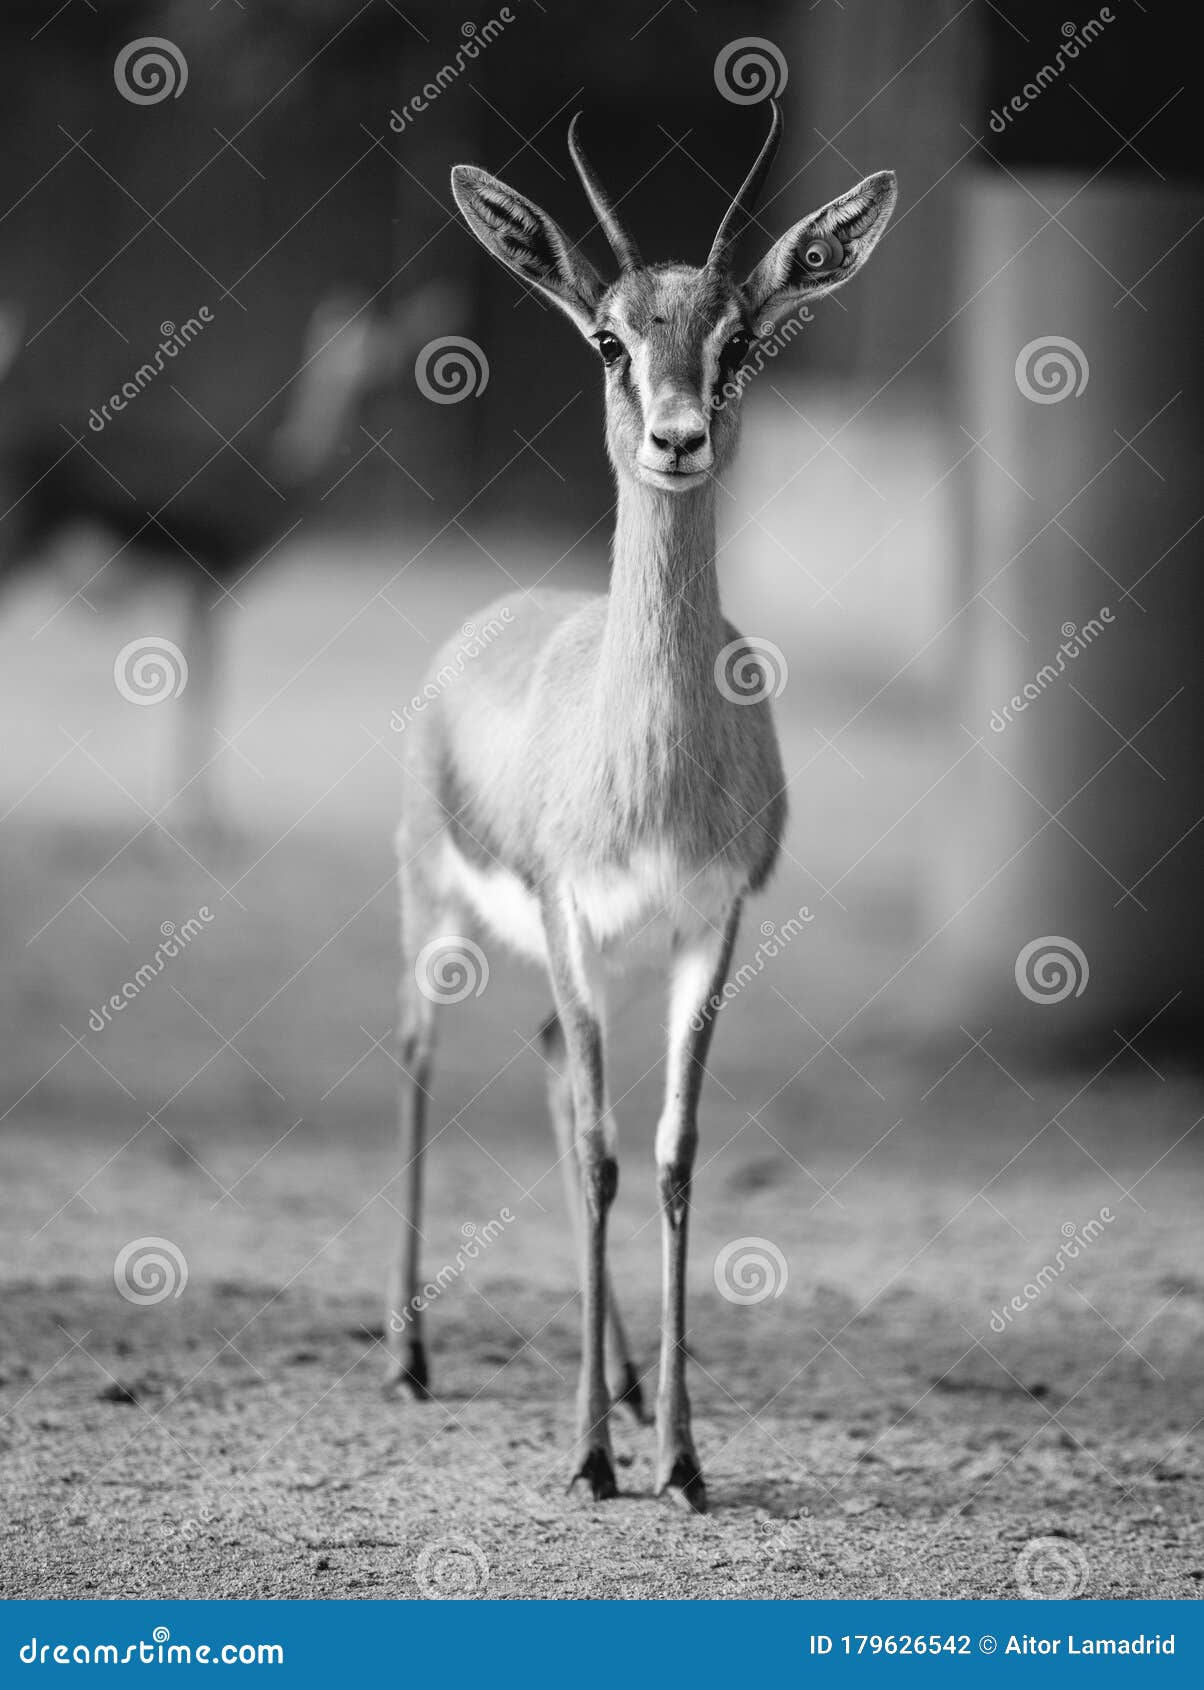 Black and White Gazelle Portrait Stock Photo - Image of goat, ecology:  179626542